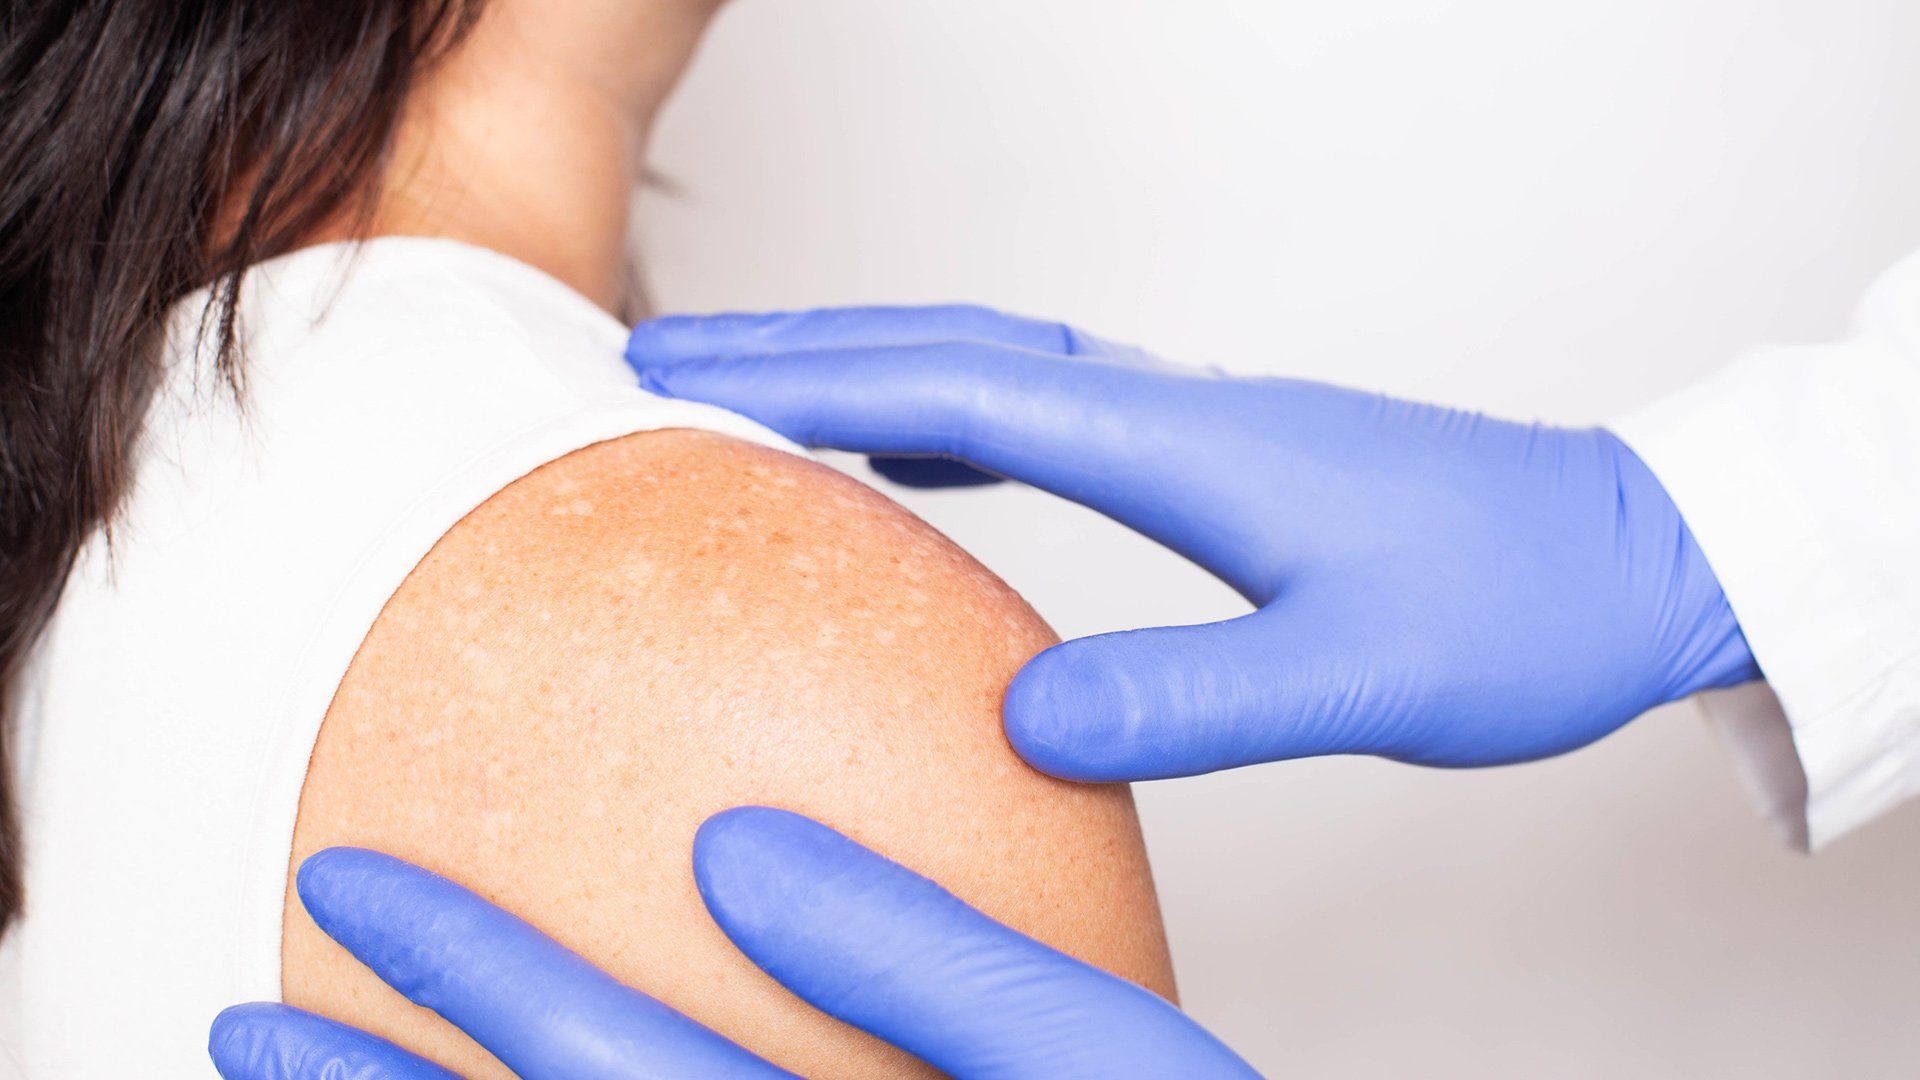 Dermatologist Conducts Medical Examination — Voorhees, NJ — Bennett K. Schwartz, M.D.